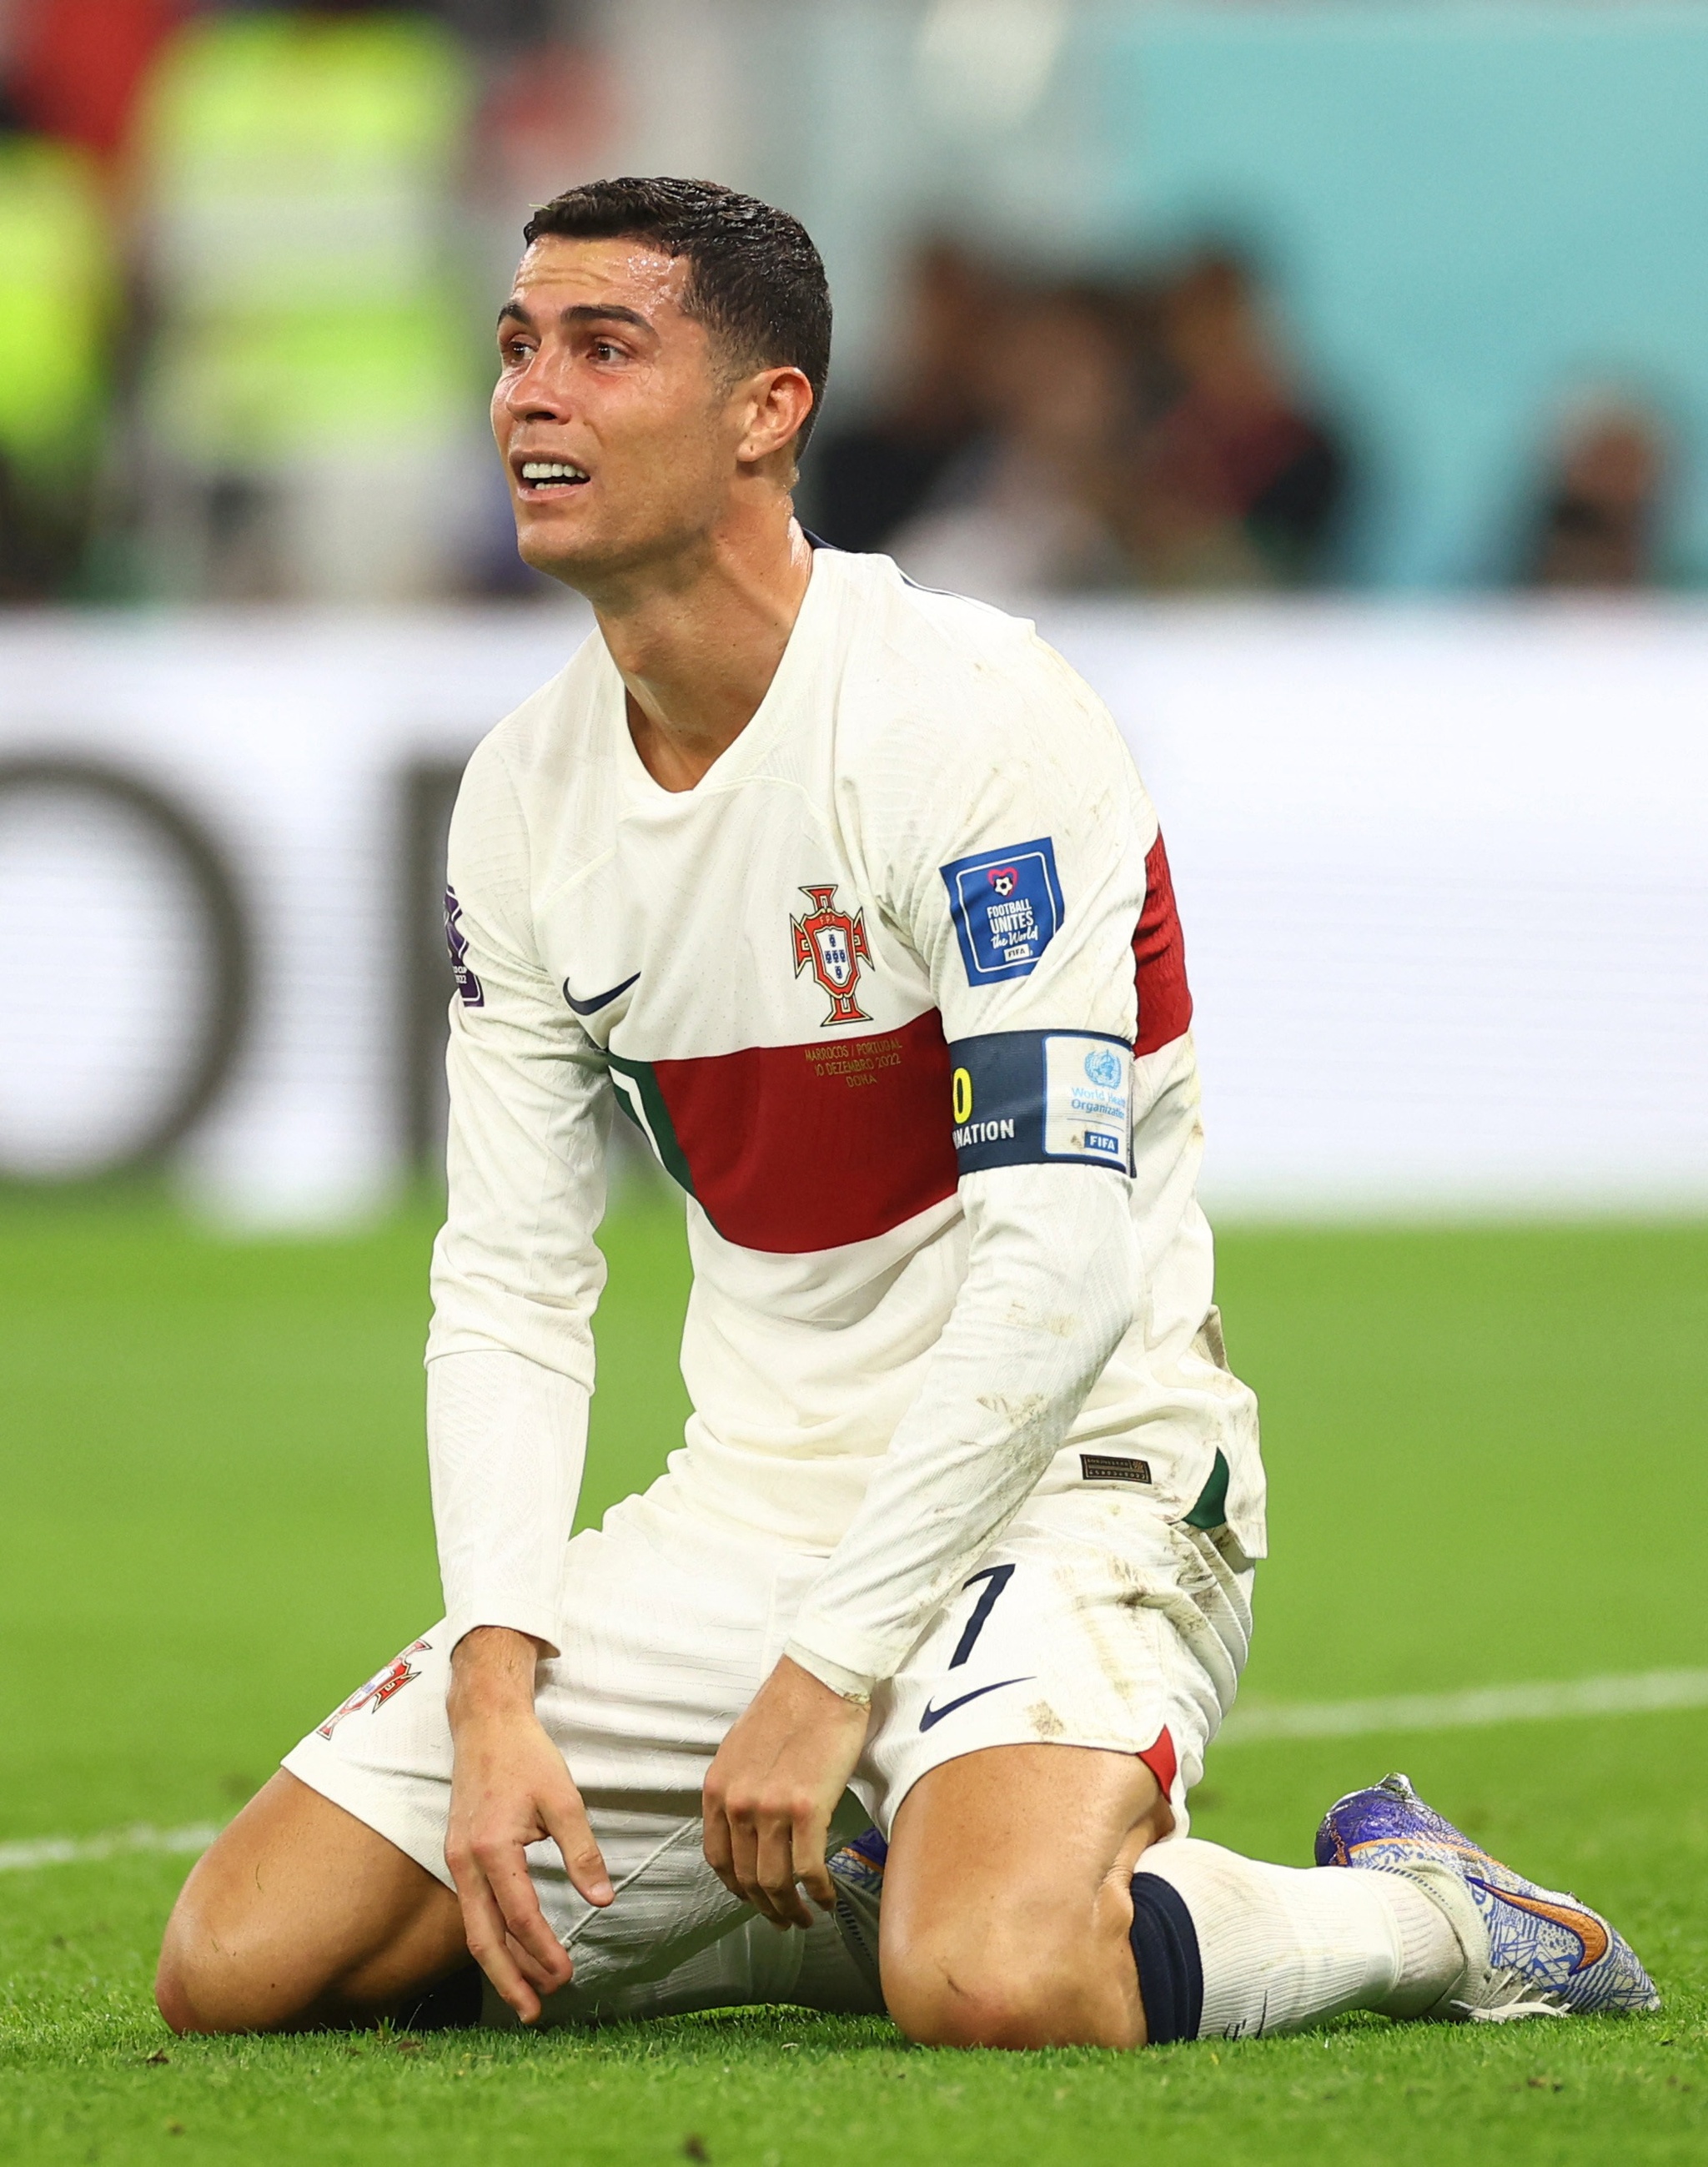 Ảnh Ronaldo khóc tại World Cup đã làm cho bóng đá trở nên sống động hơn bao giờ hết! Điều này thể hiện rằng các cầu thủ vẫn là con người, mà không ai có thể đánh bại được cảm xúc. Để biết thêm thông tin về ảnh Ronaldo khóc tại World Cup, hãy xem ngay hình ảnh này.